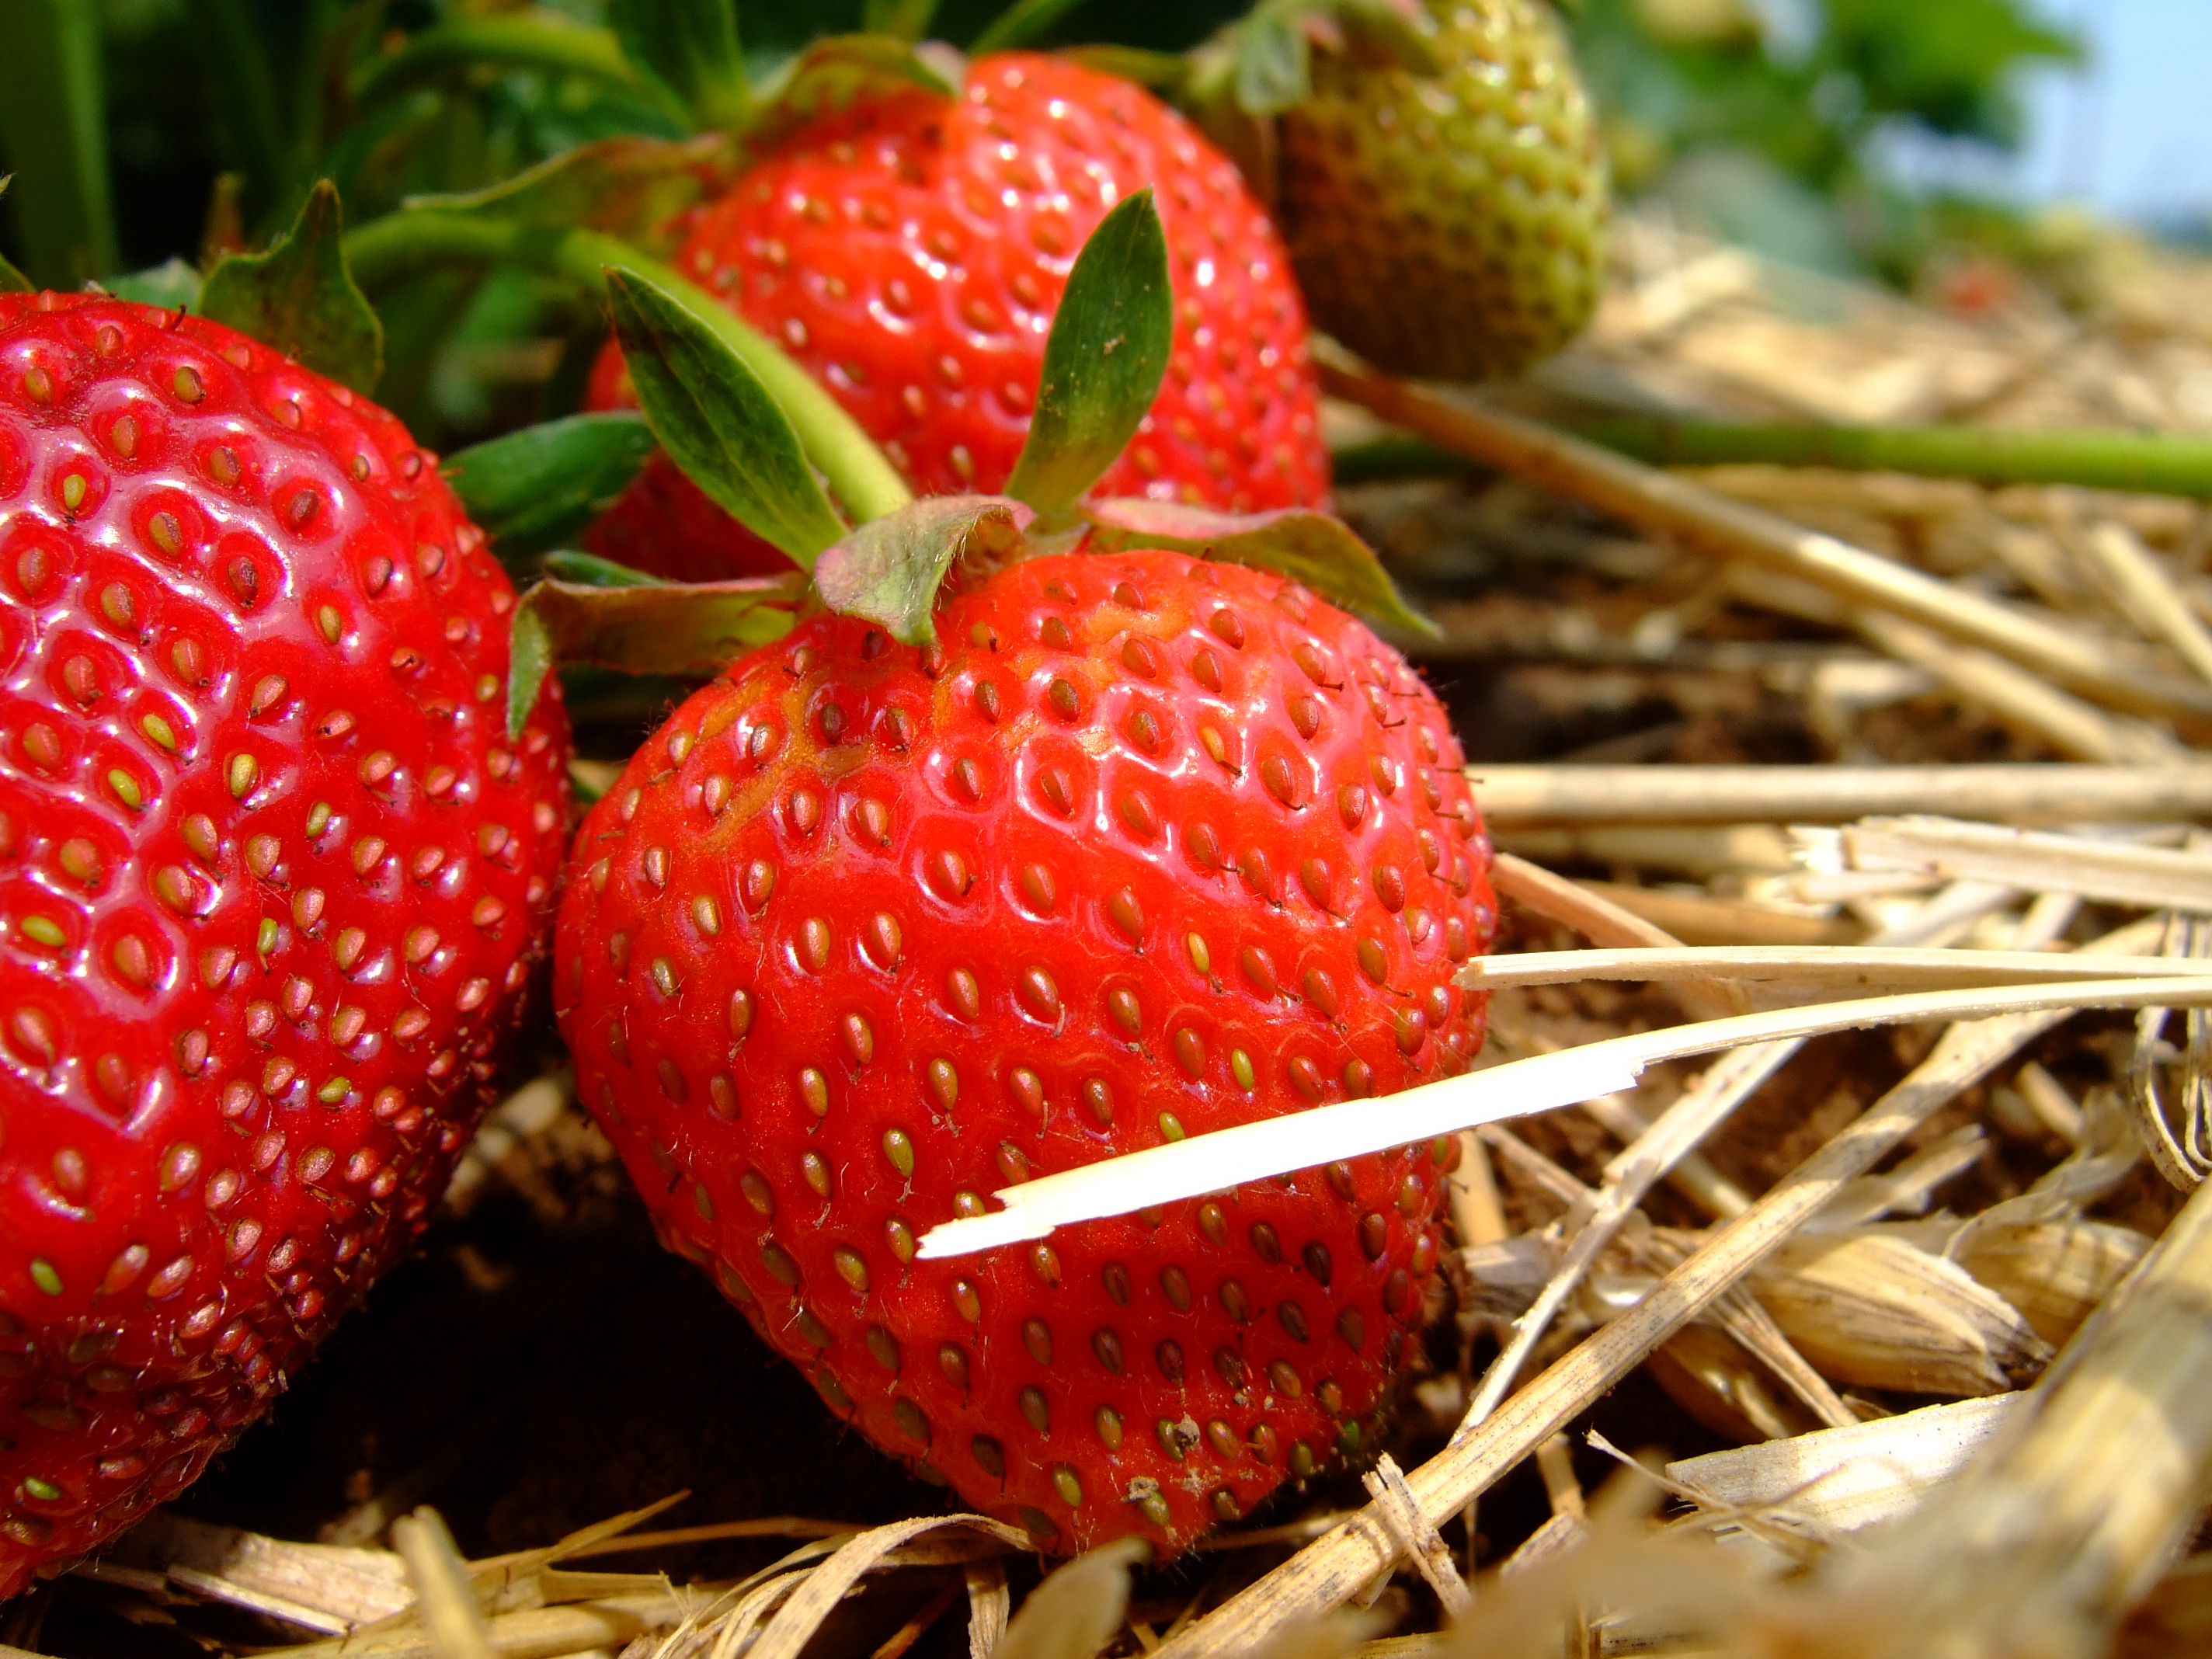 フリー画像 食べ物 果物 フルーツ 苺 イチゴ フリー素材 画像素材なら 無料 フリー写真素材のフリーフォト